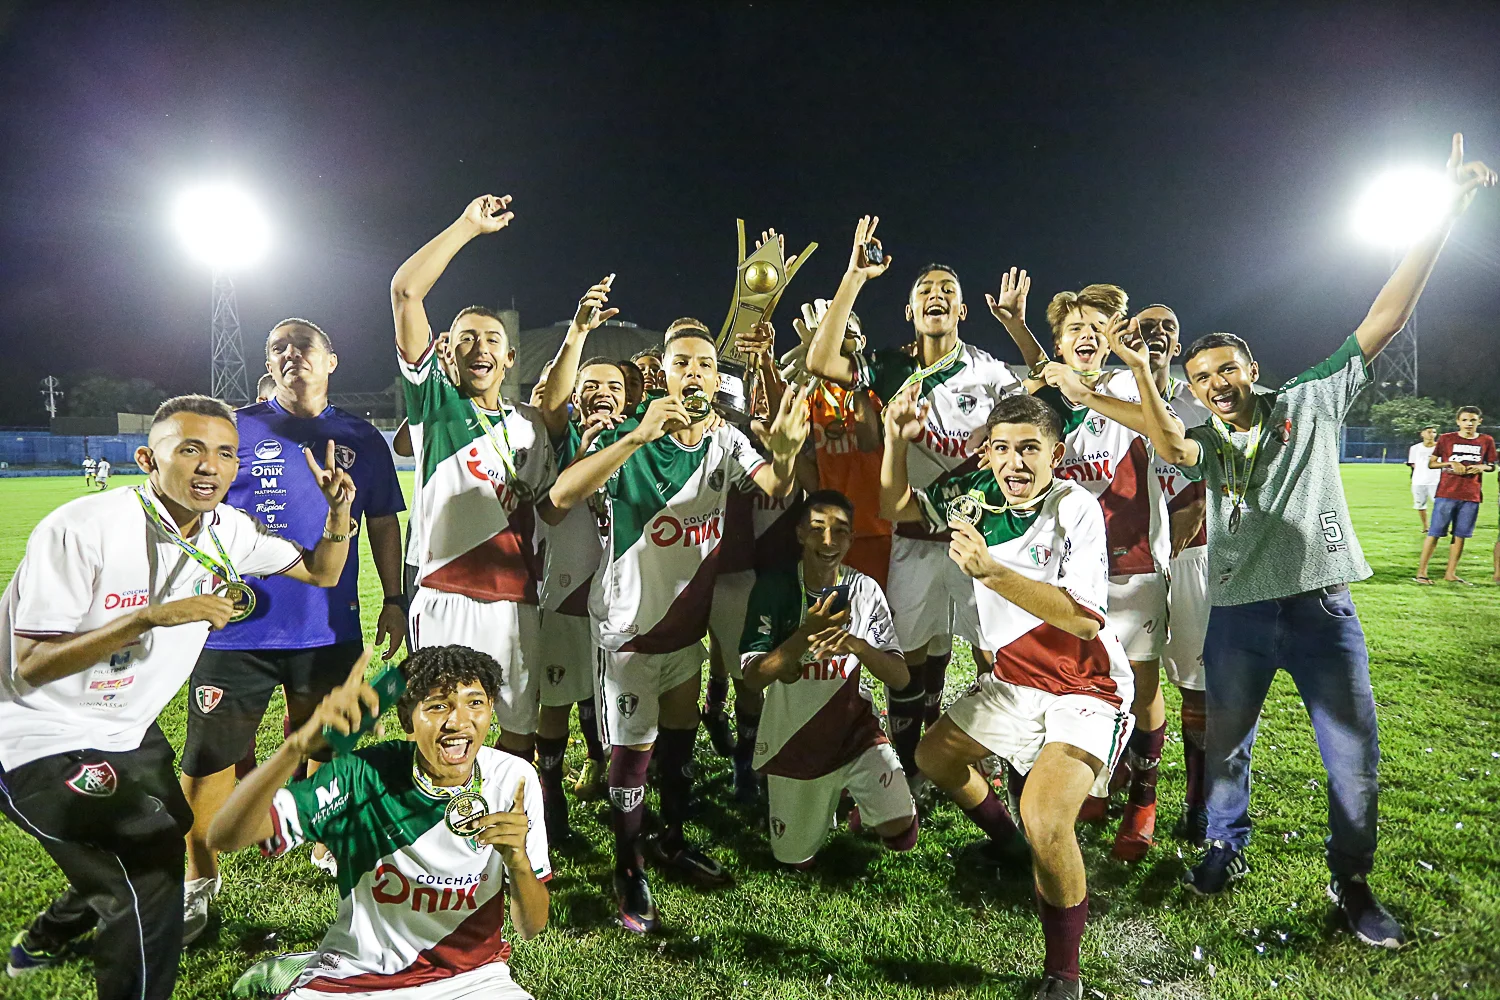 Campeão mundial com seleção Sub-17, goleiro do Fluminense celebra